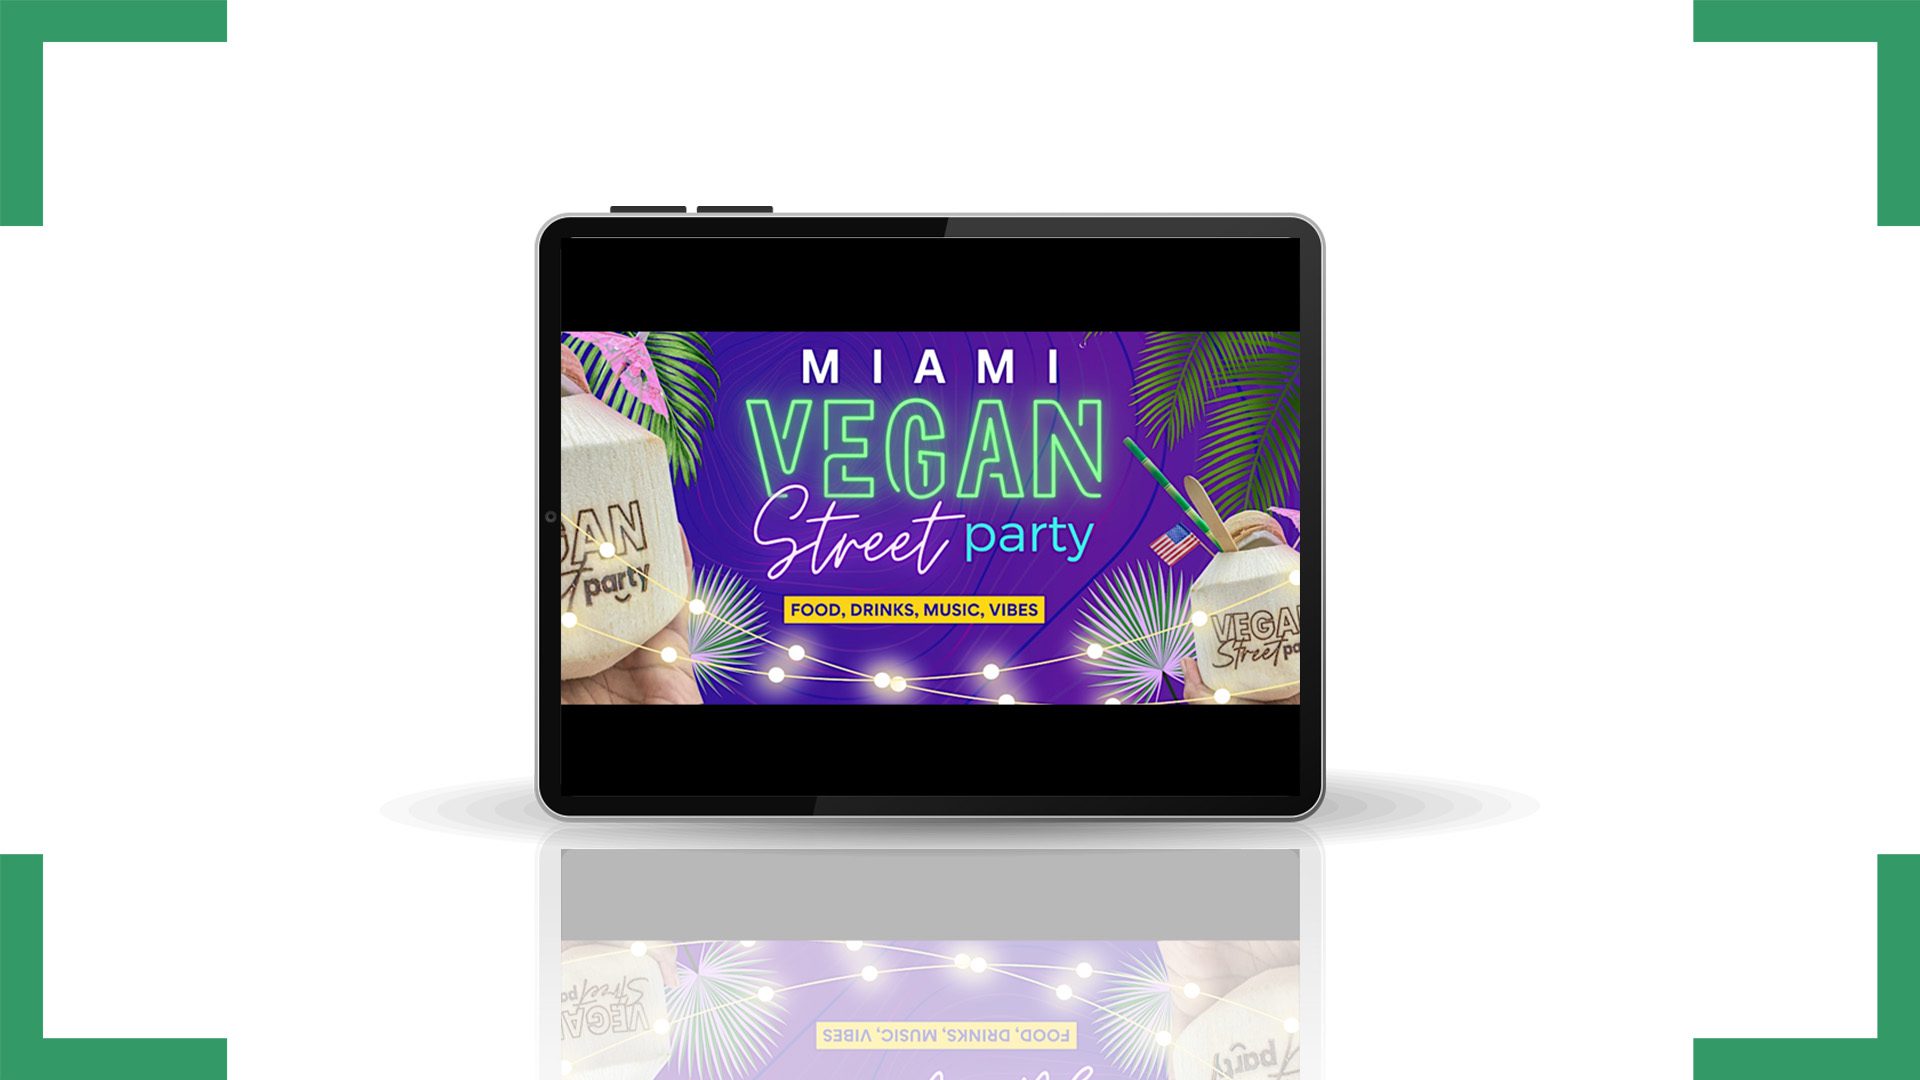 Vegan Street Party Miami